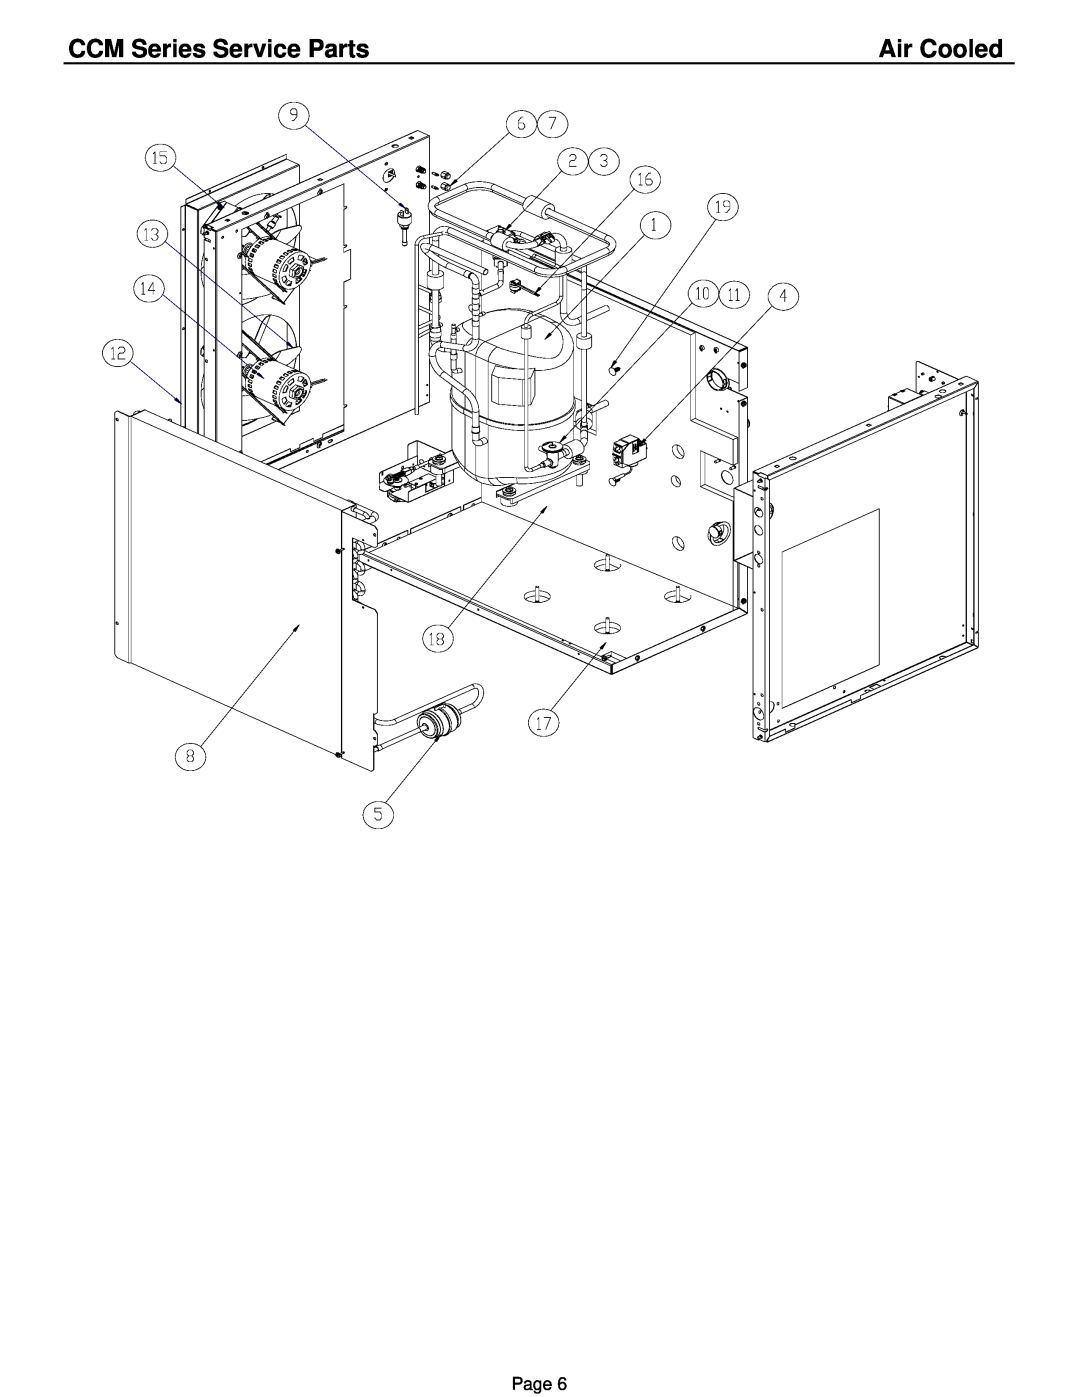 Cornelius CCM1030 1, CCM0830 1 manual Air Cooled, CCM Series Service Parts, Page 